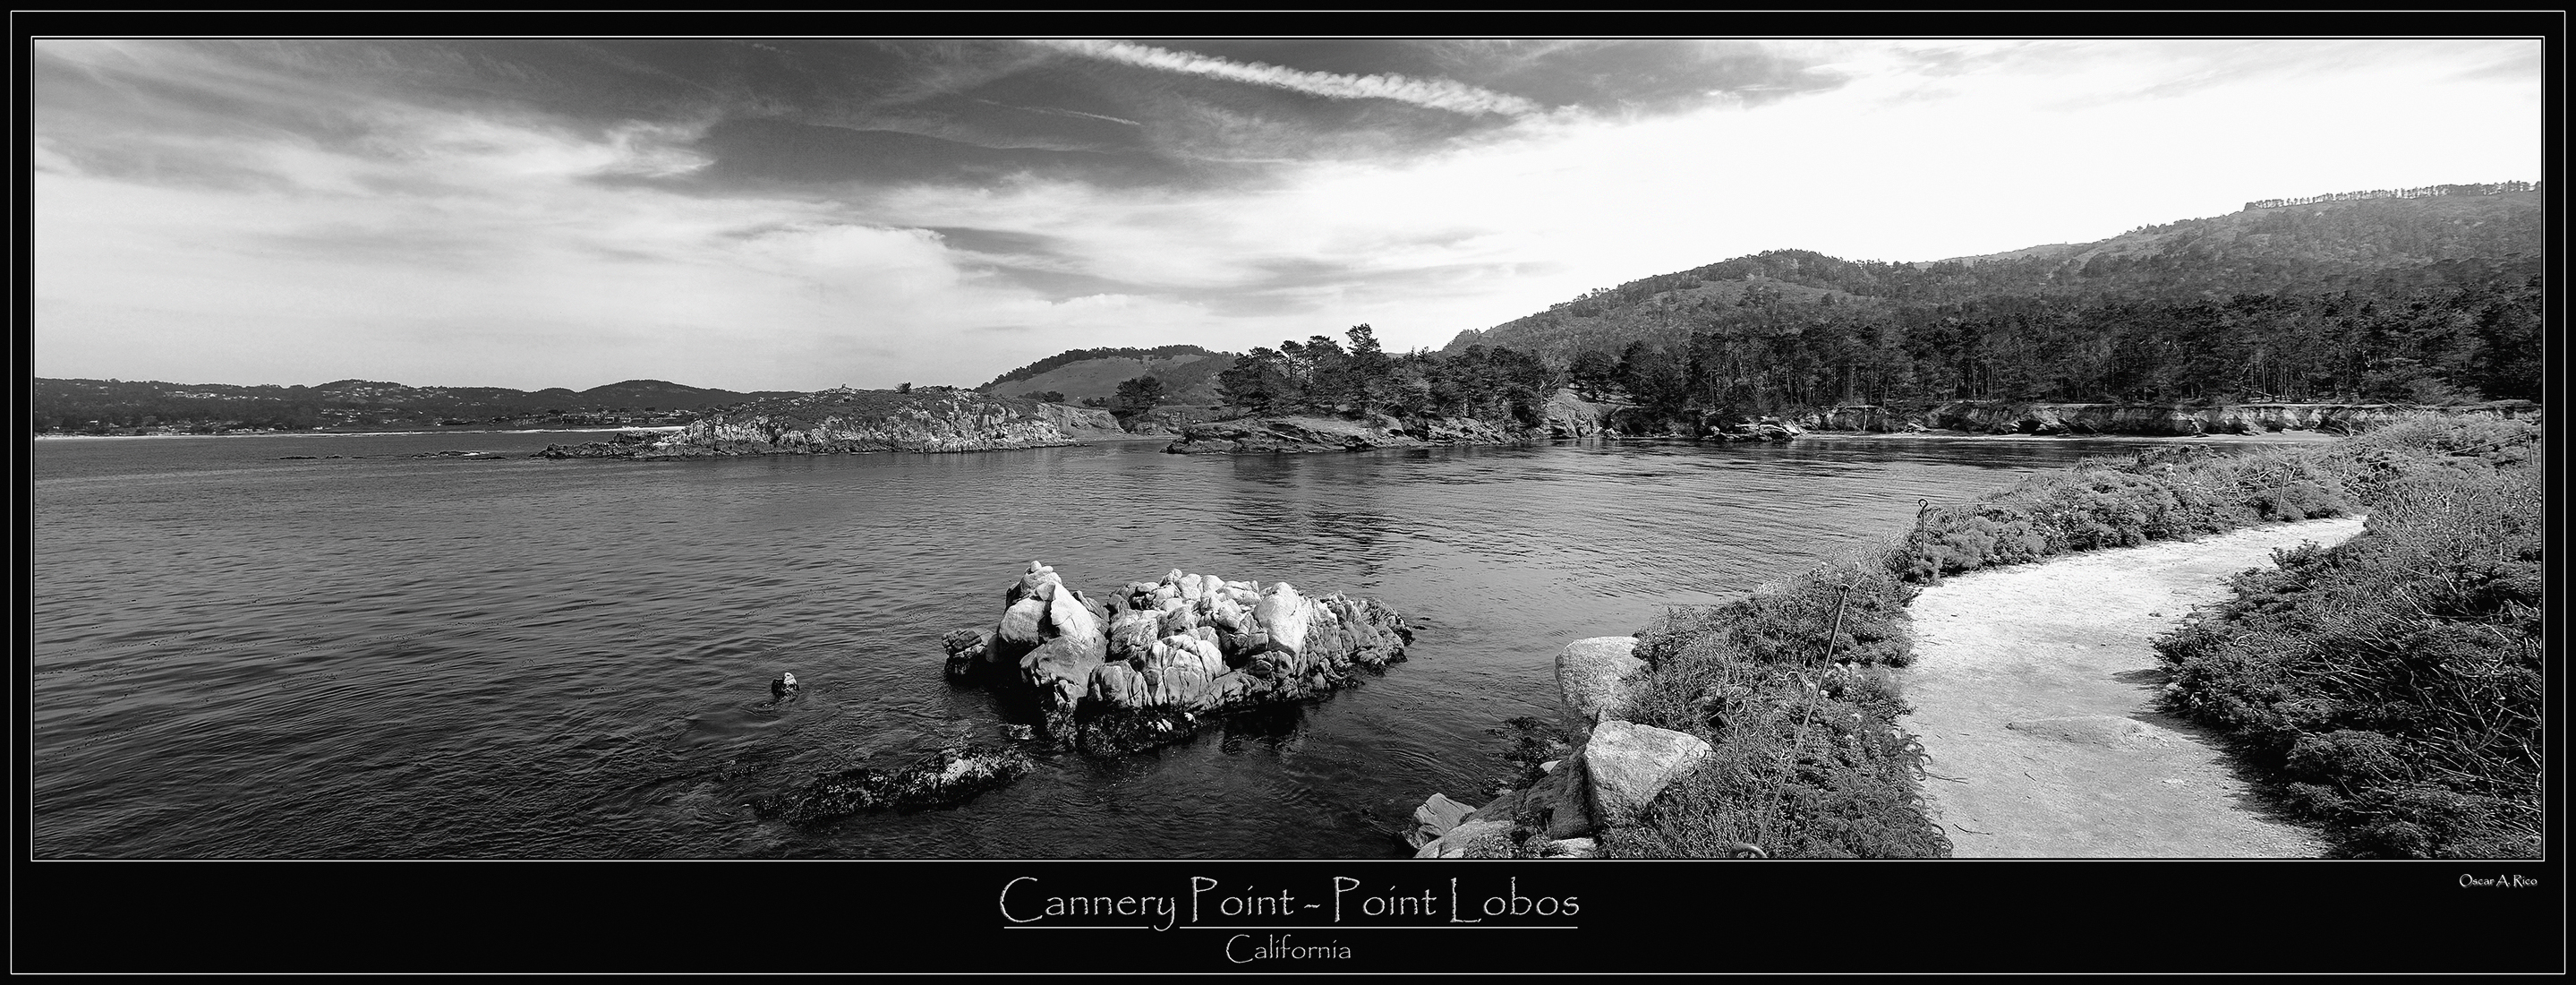 Cannery Point - Point Lobos - California.jpg